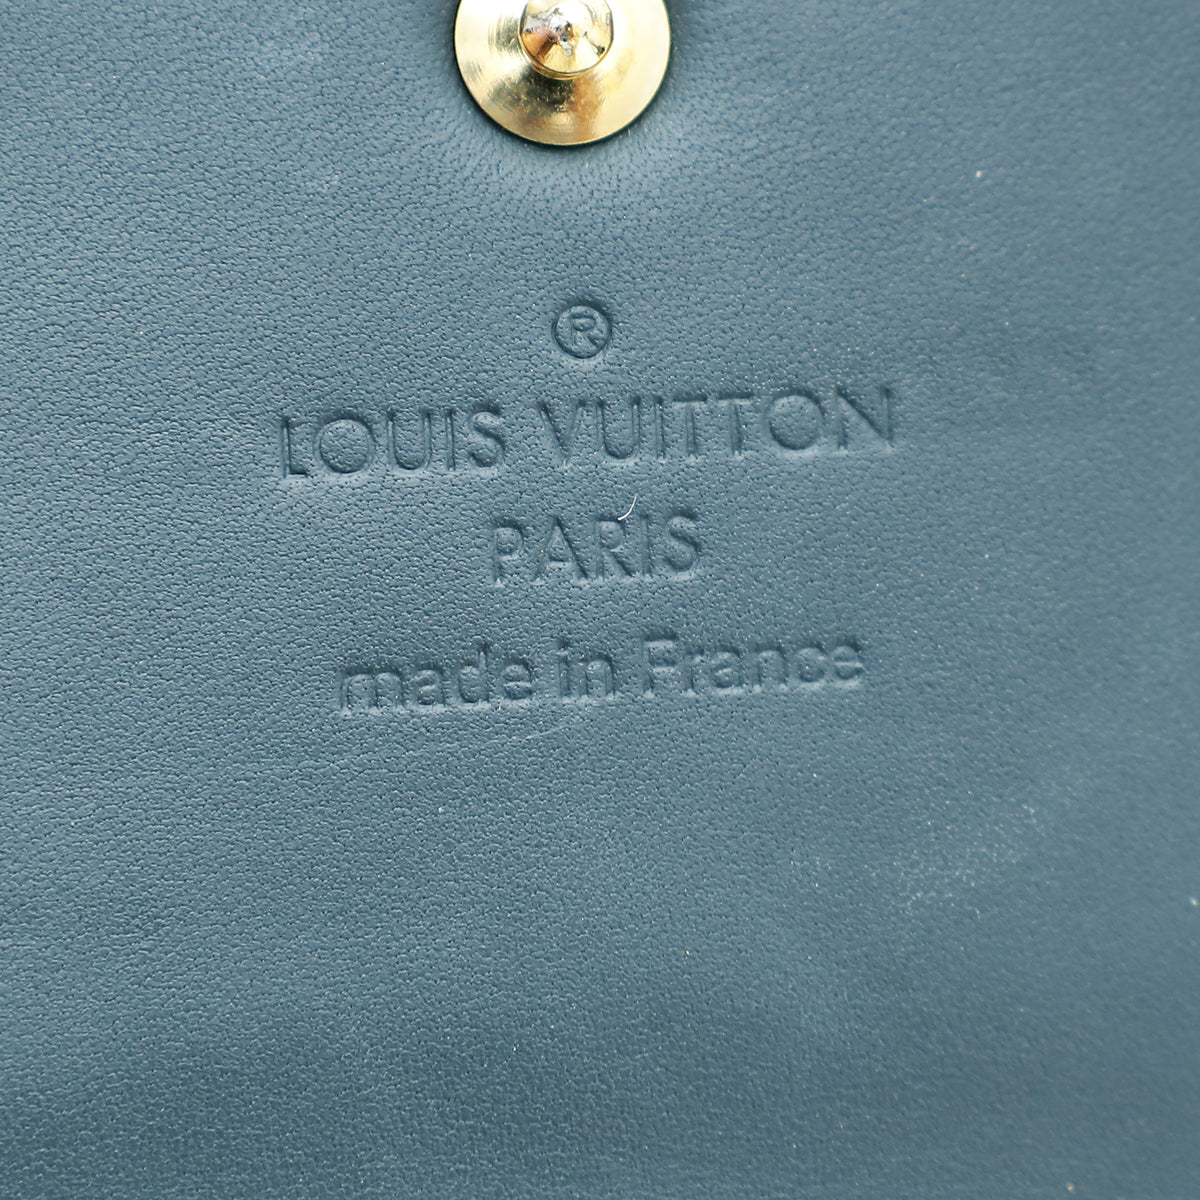 Louis Vuitton Blue Nuit Monogram Vernis Sarah Wallet – The Closet